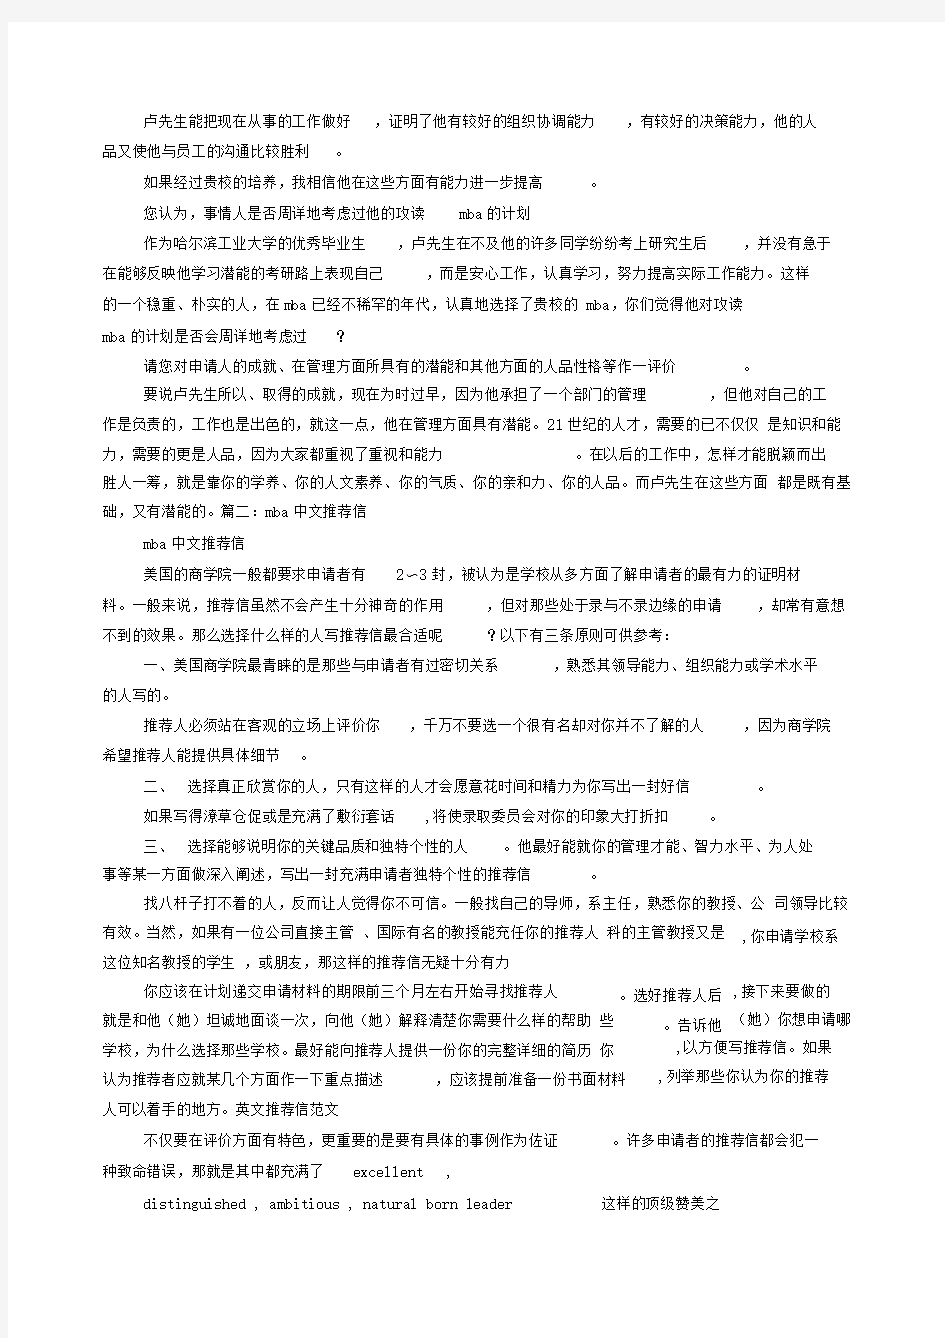 MBA中文推荐信